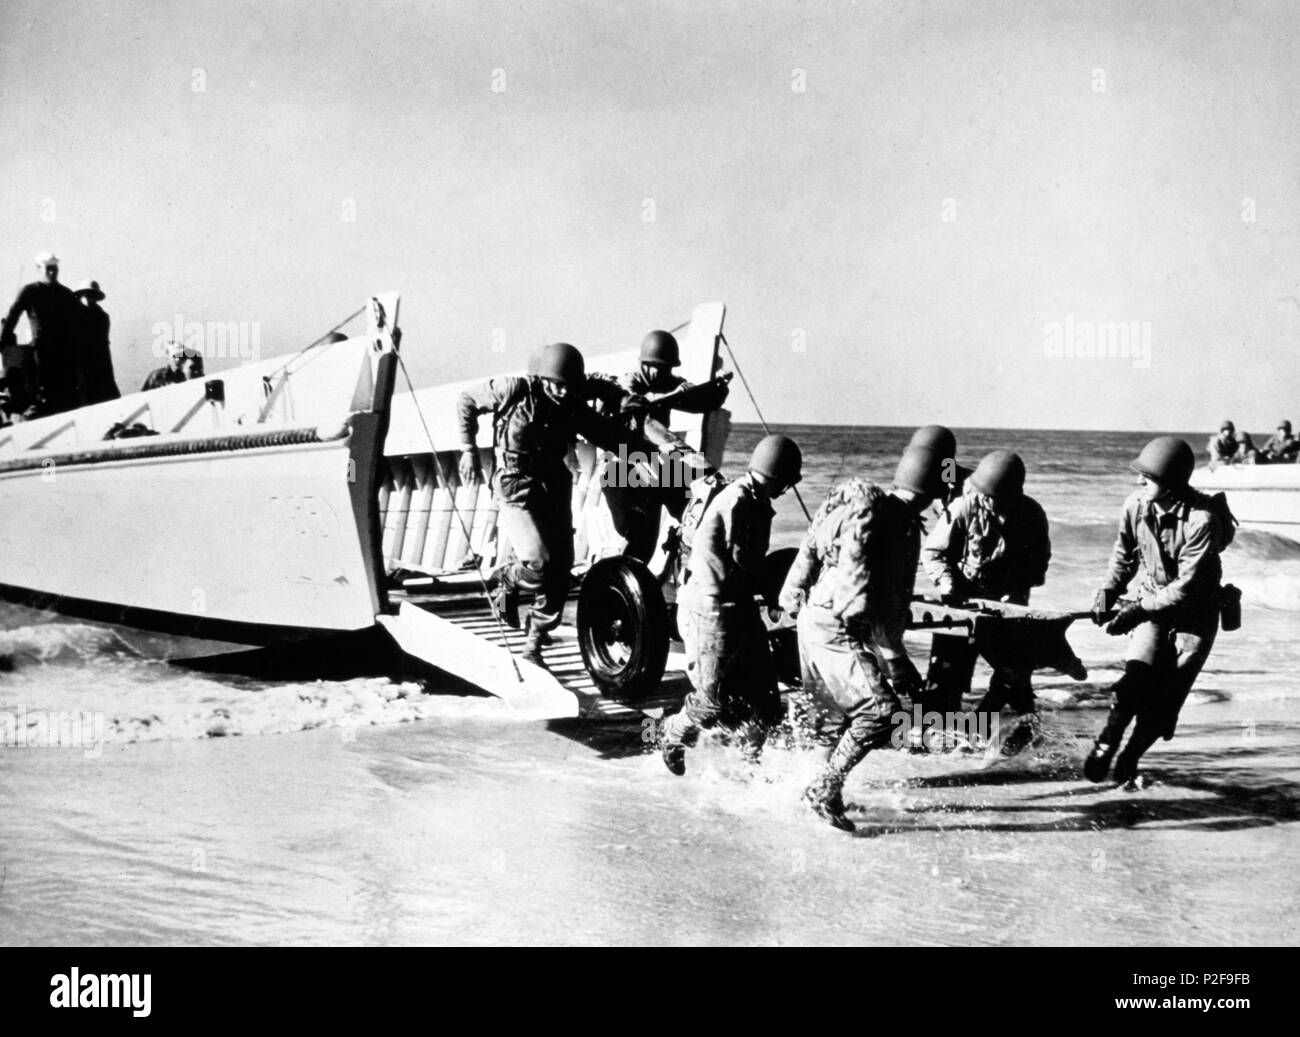 Im zweiten Weltkrieg. Wester Front: Normandie Invasion. Marines Landung in der Normandie Invasion 1945, 6. Juni 1944. Stockfoto